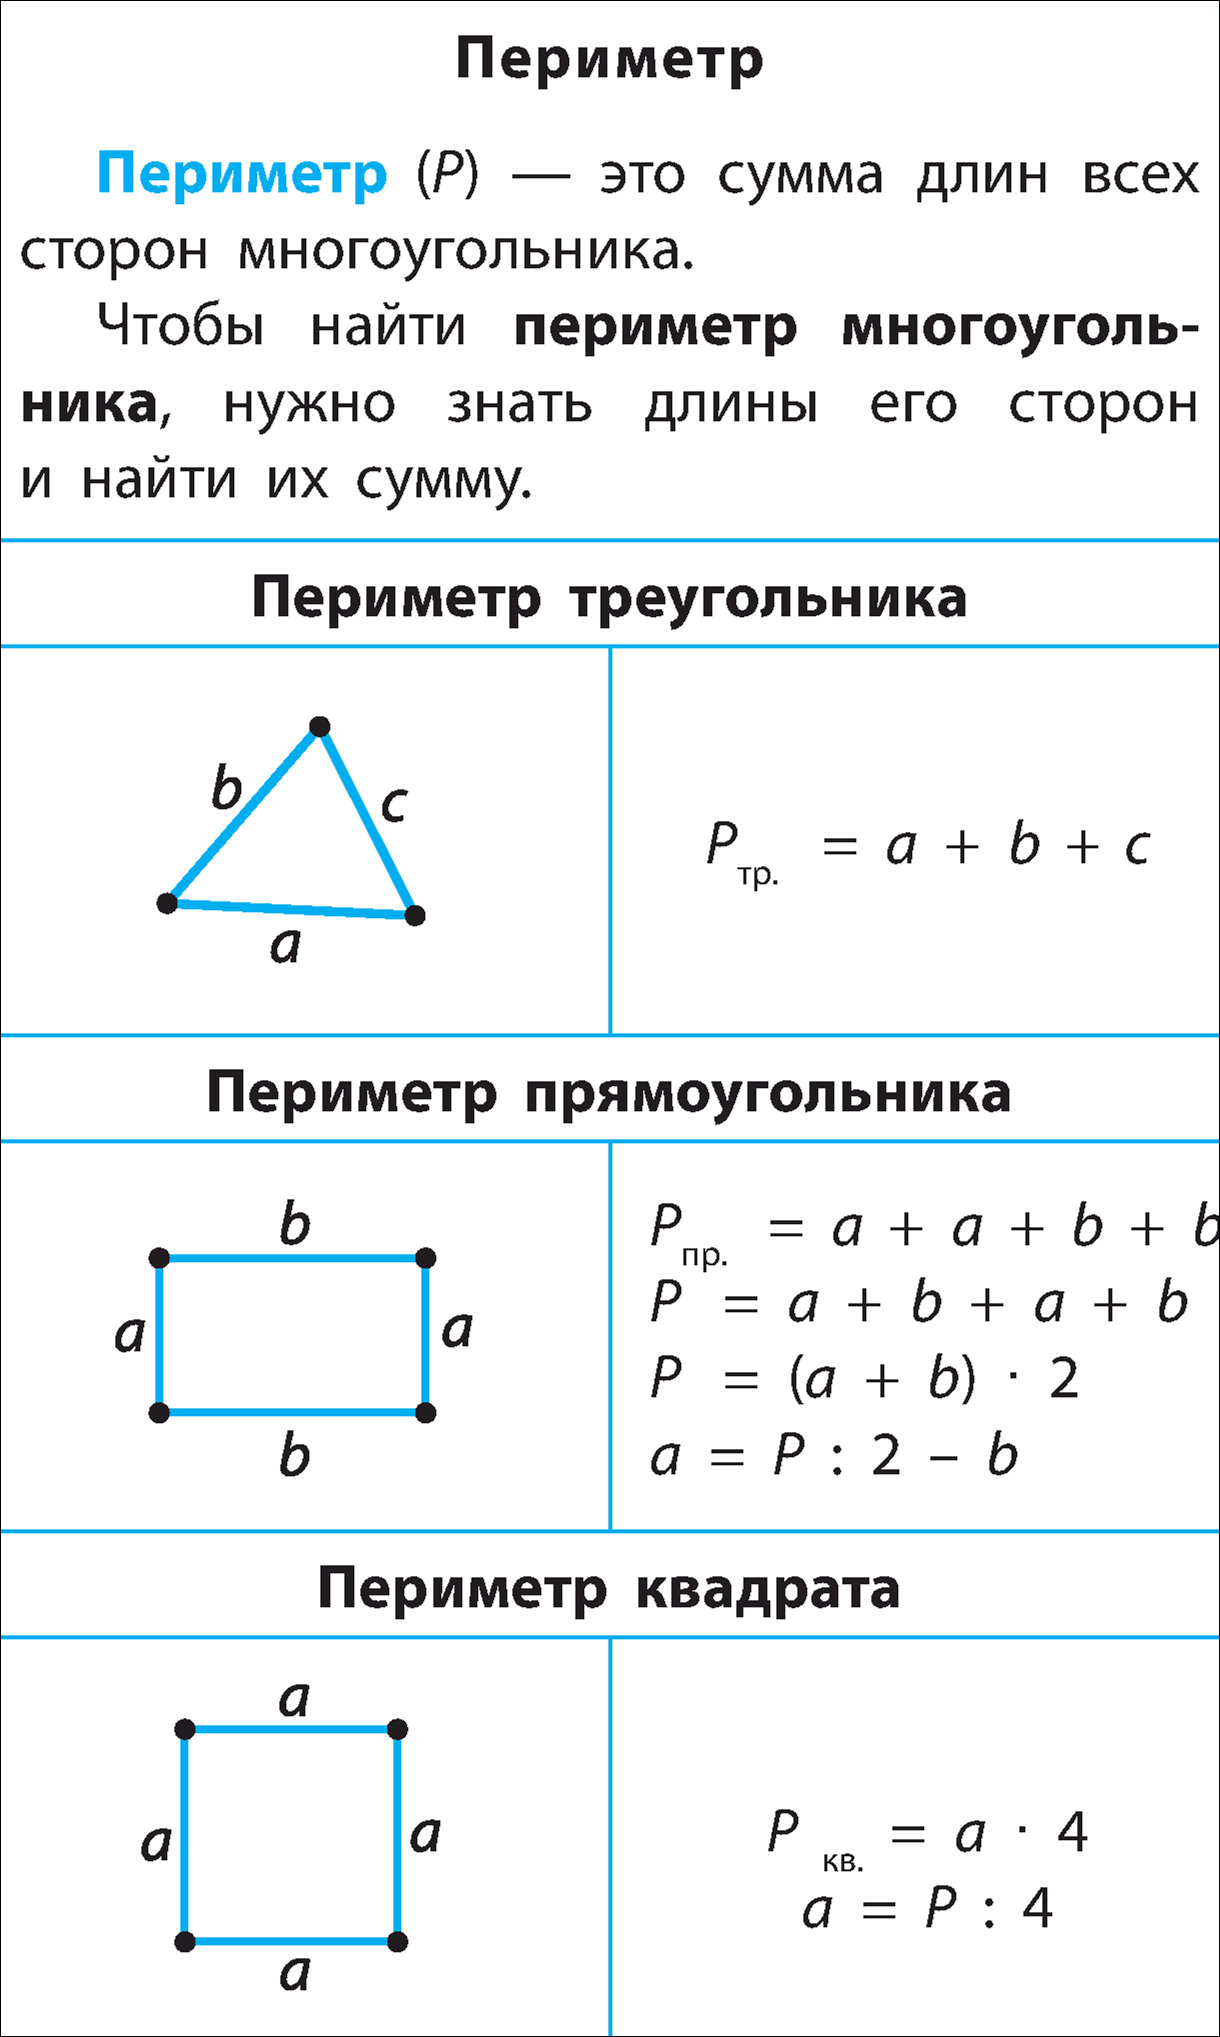 2 класс математика периметр прямоугольника конспект. Периметр прямоугольника квадрата треугольника формулы. Формула нахождения периметра треугольника и квадрата 3 класс. Формула нахождения периметра квадрата и прямоугольника 3 класс. Формула периметра 2 класс математика.